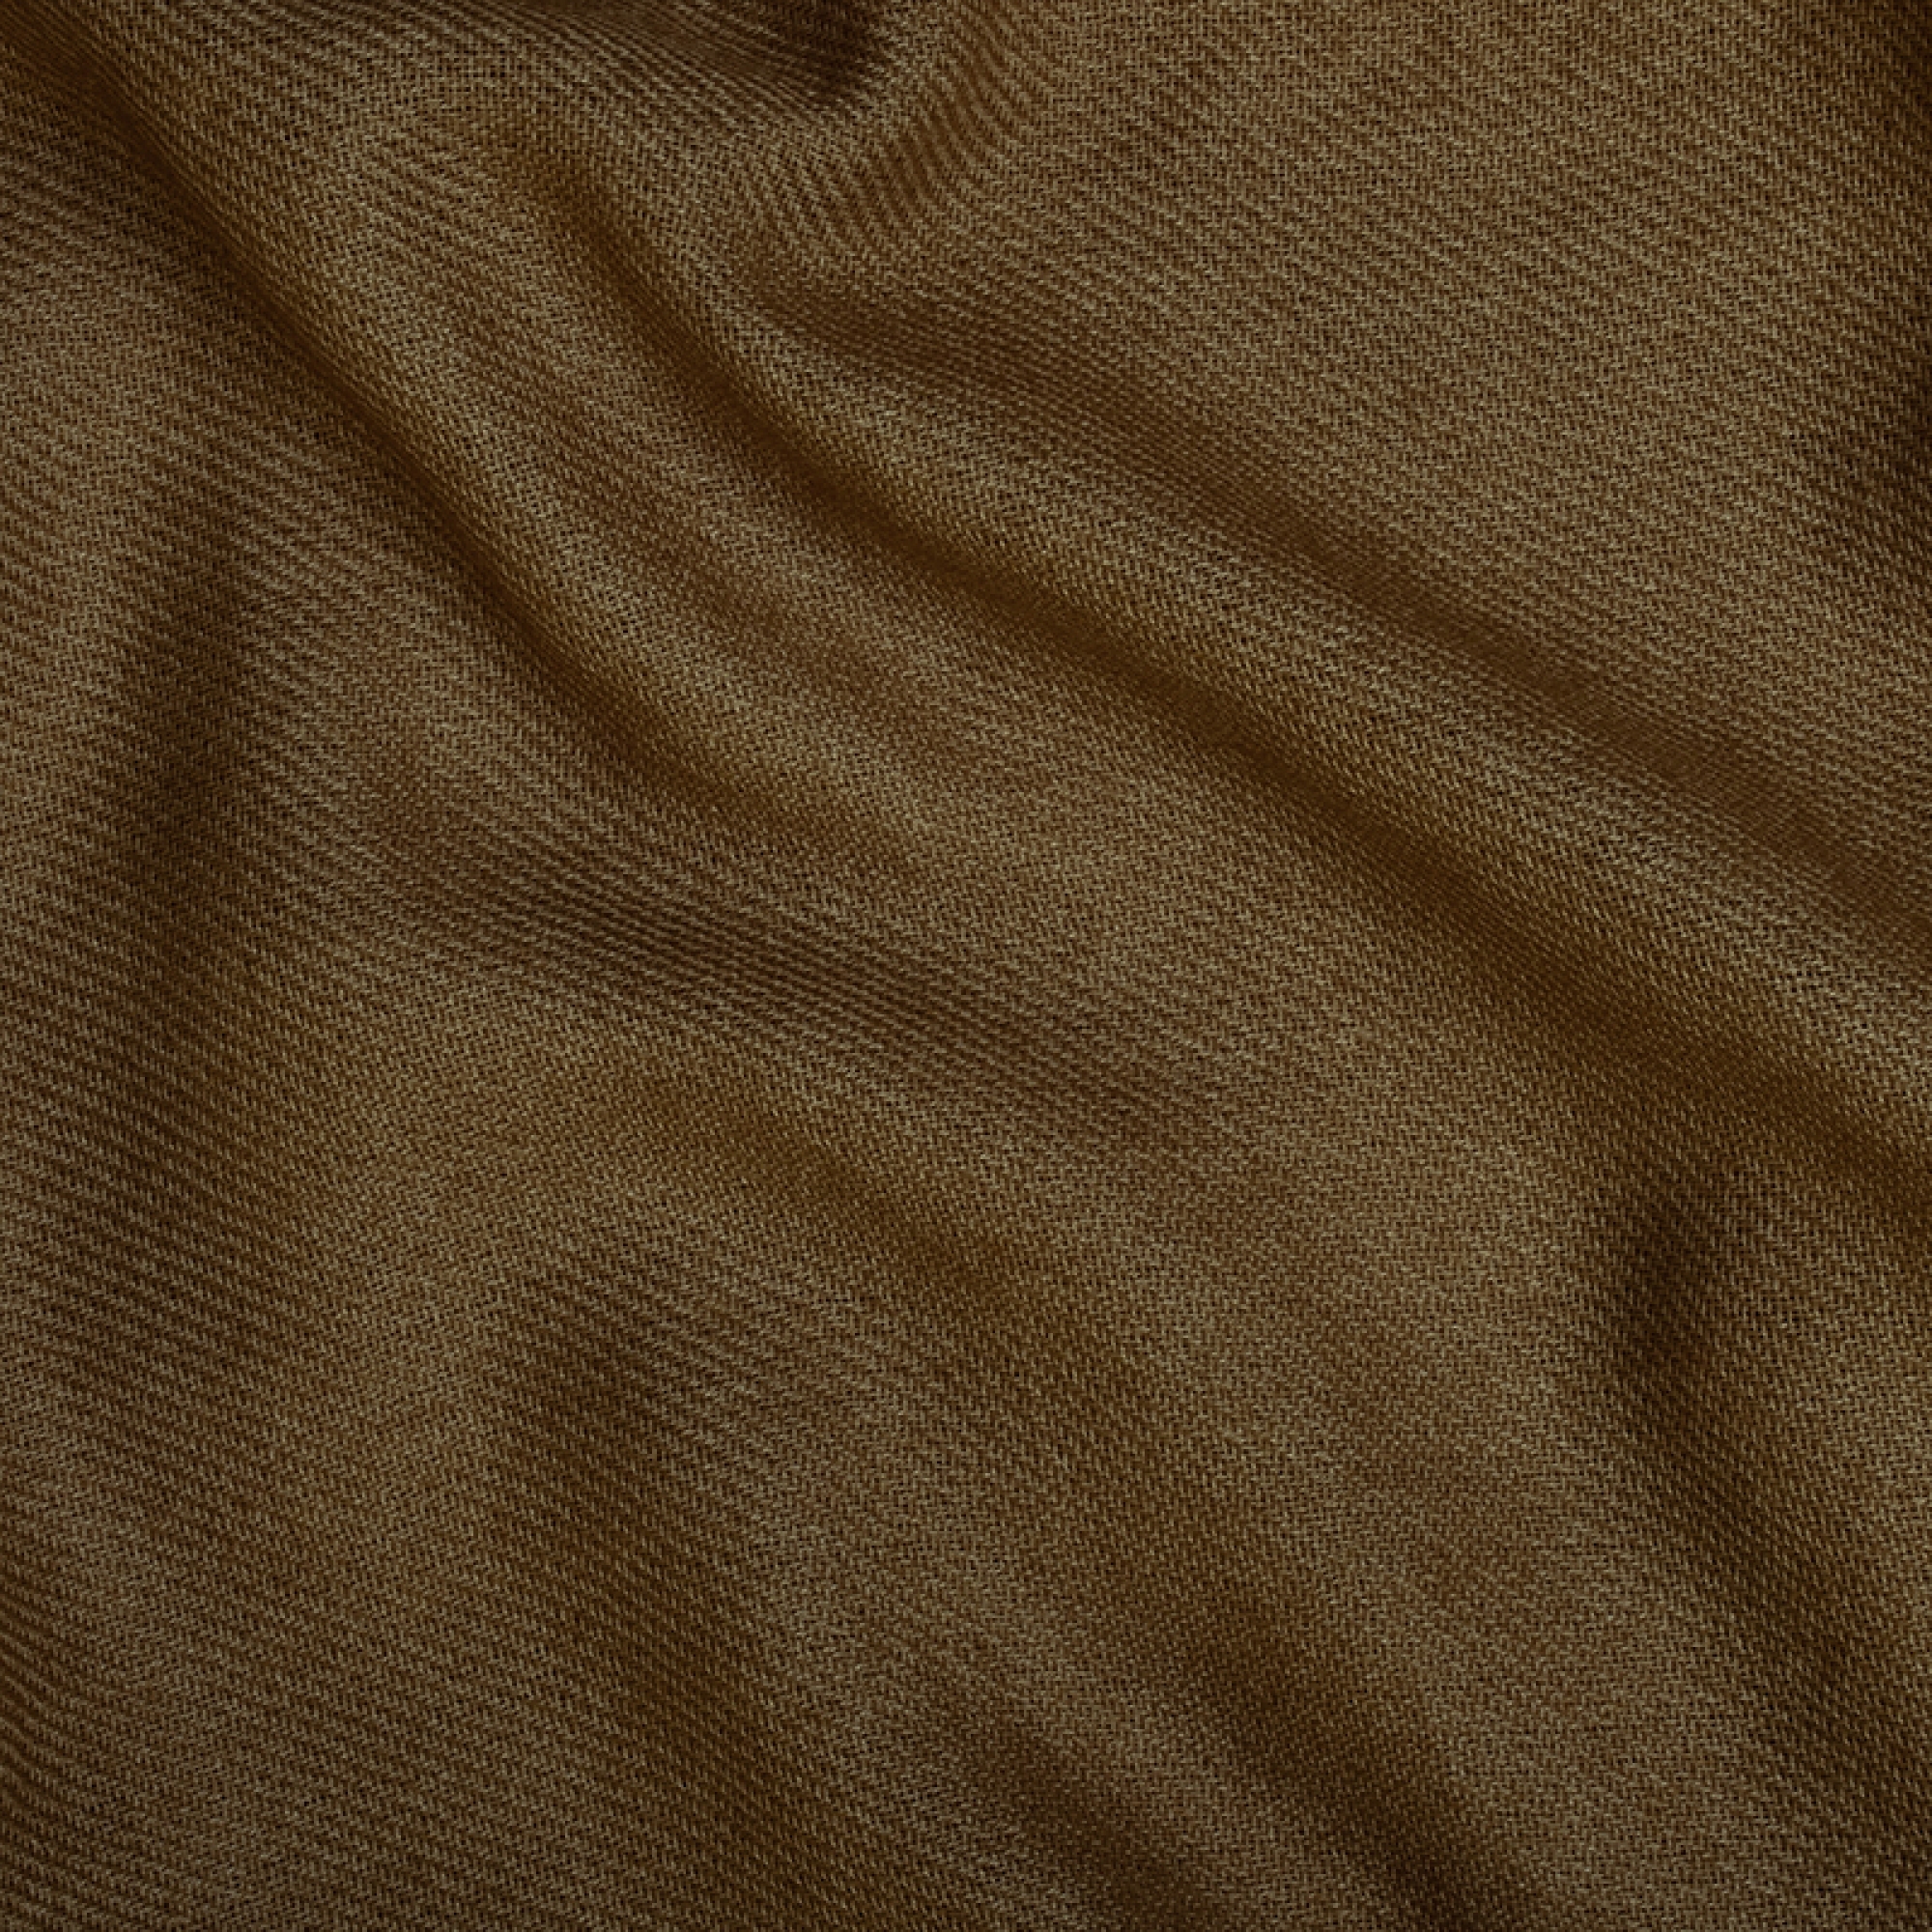 Cashmere accessories blanket frisbi 147 x 203 bronze 147 x 203 cm